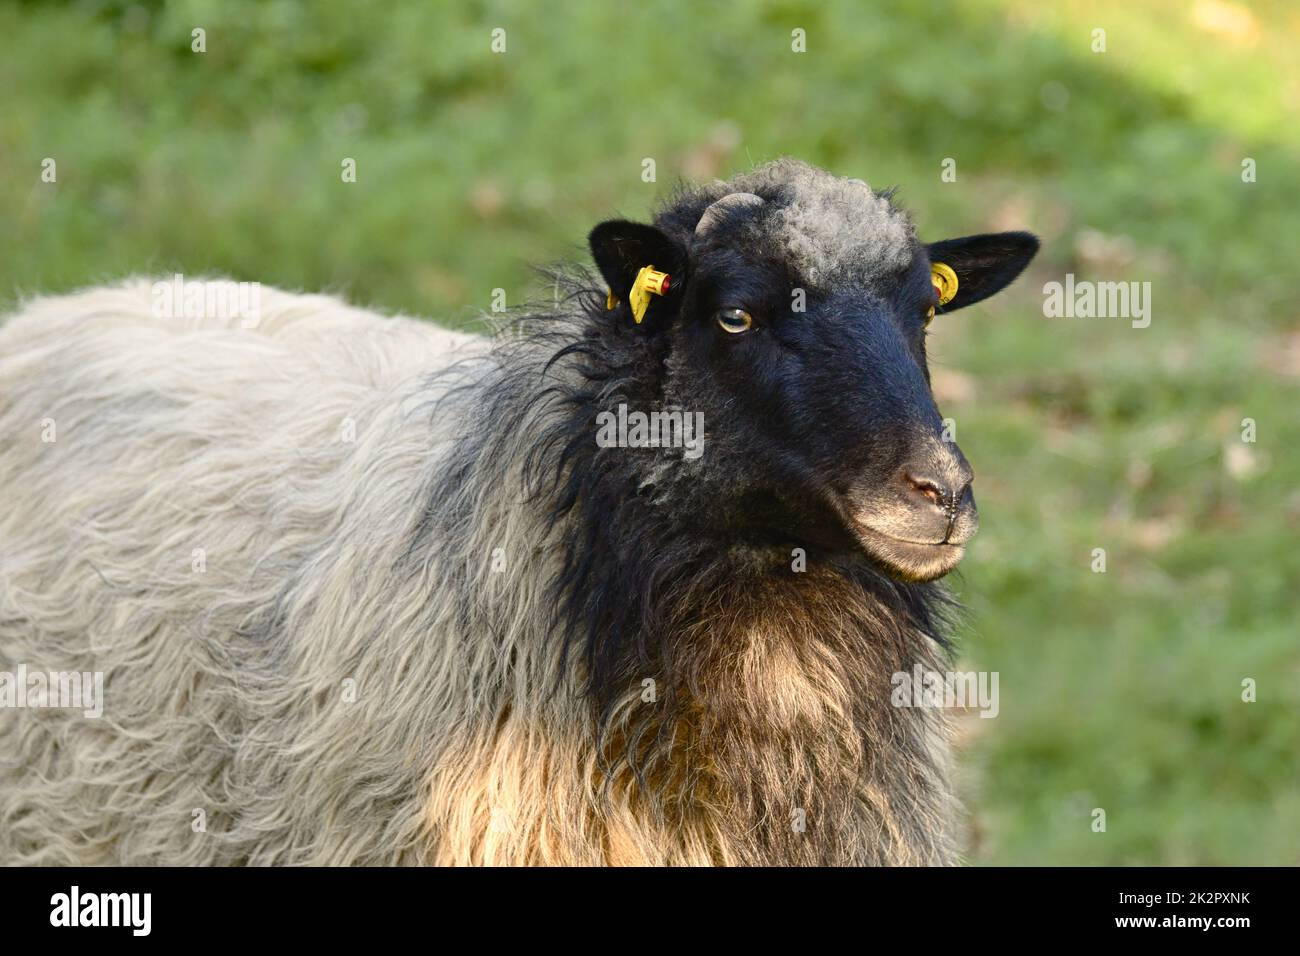 Portrait d'un joli mouton noir avec de la laine blanche Banque D'Images